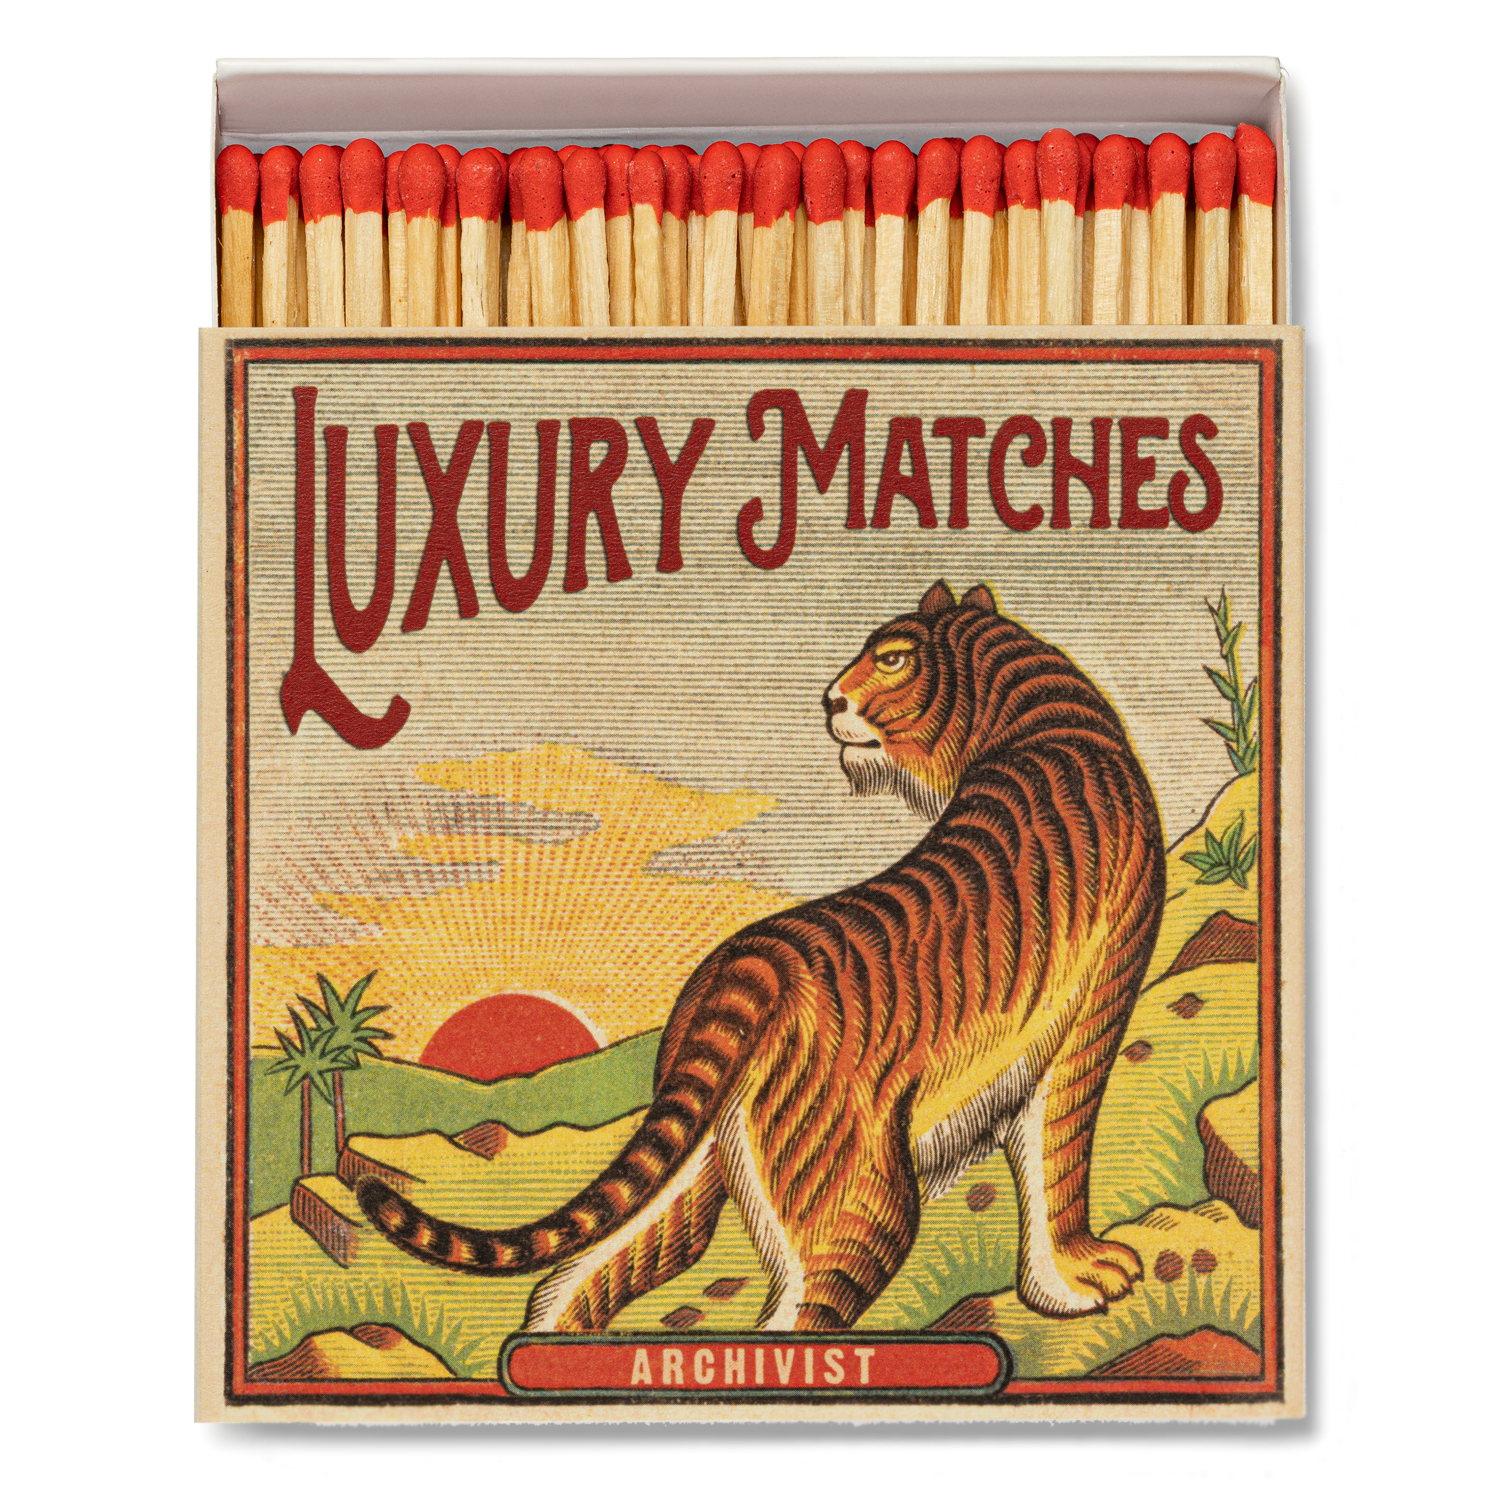 Archivist Luxury Matches - Tiger